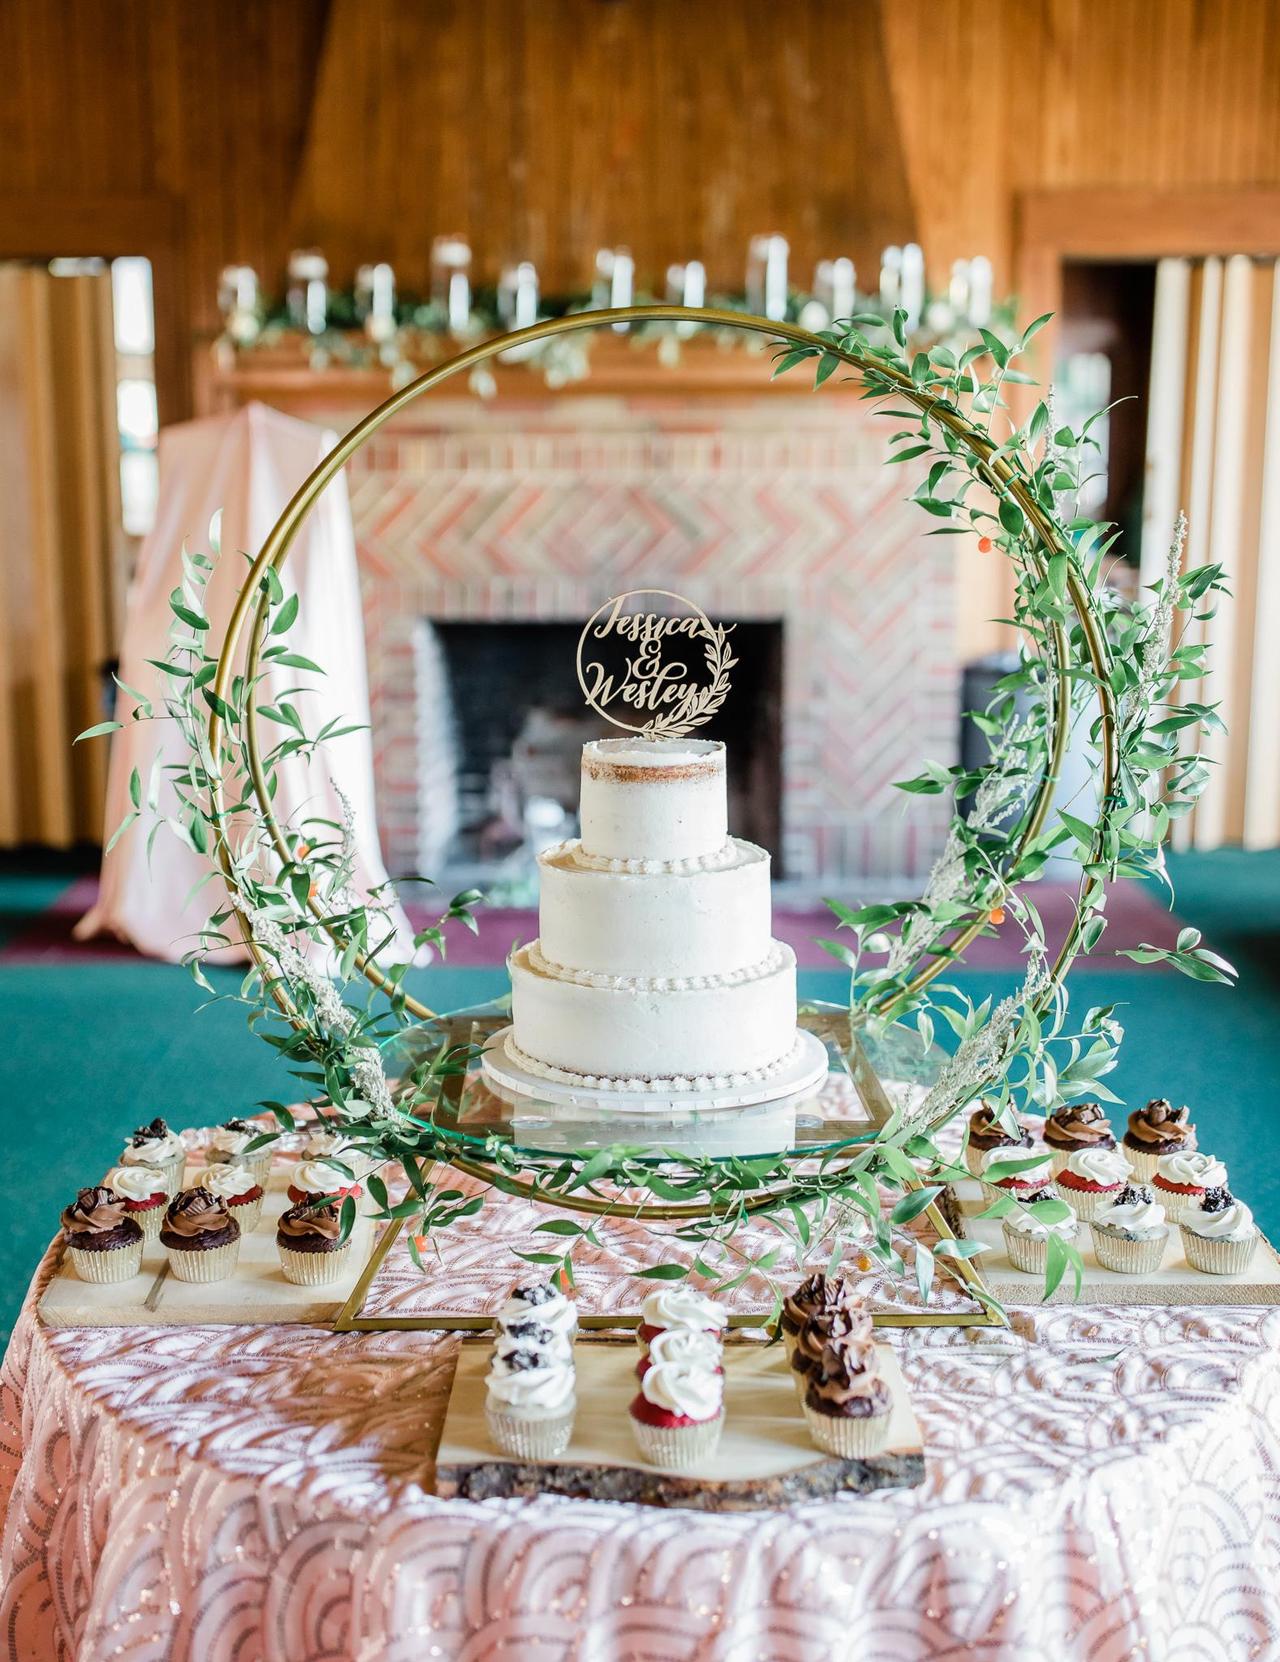 Blog | Amazing Wedding Cake Ideas For The Outdoorsy Couple